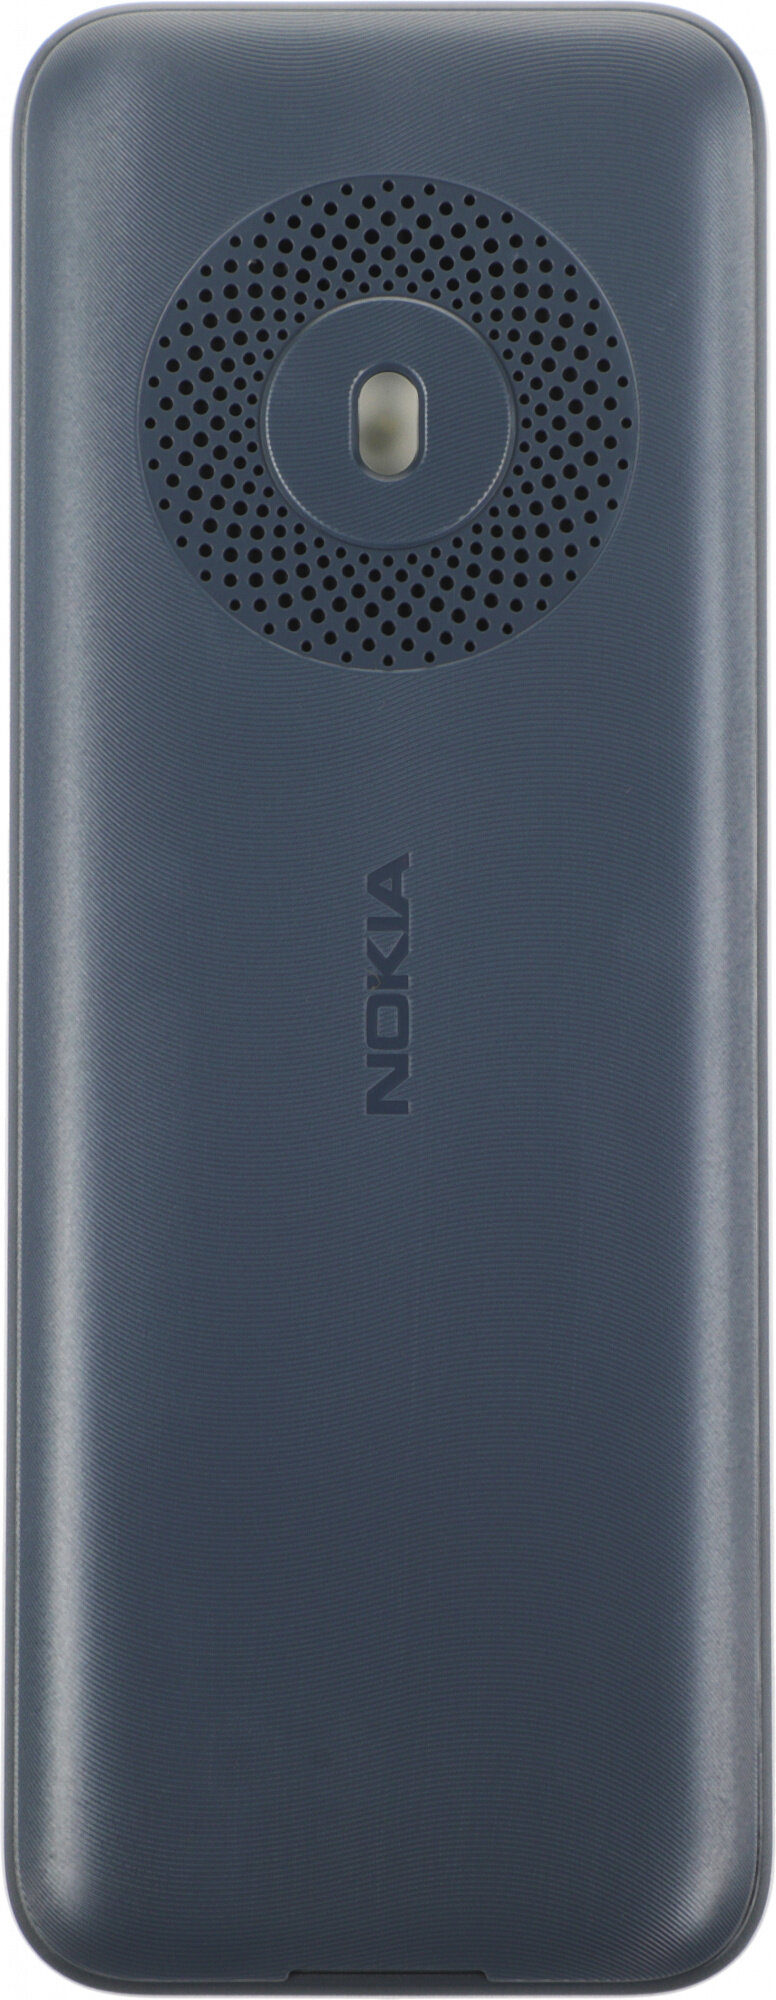 Мобильный телефон Nokia EAC светло-золотистый моноблок 2.4" 240x320 Series 30+ 0.3Mpix GSM900/1800 MP3 - фото №12